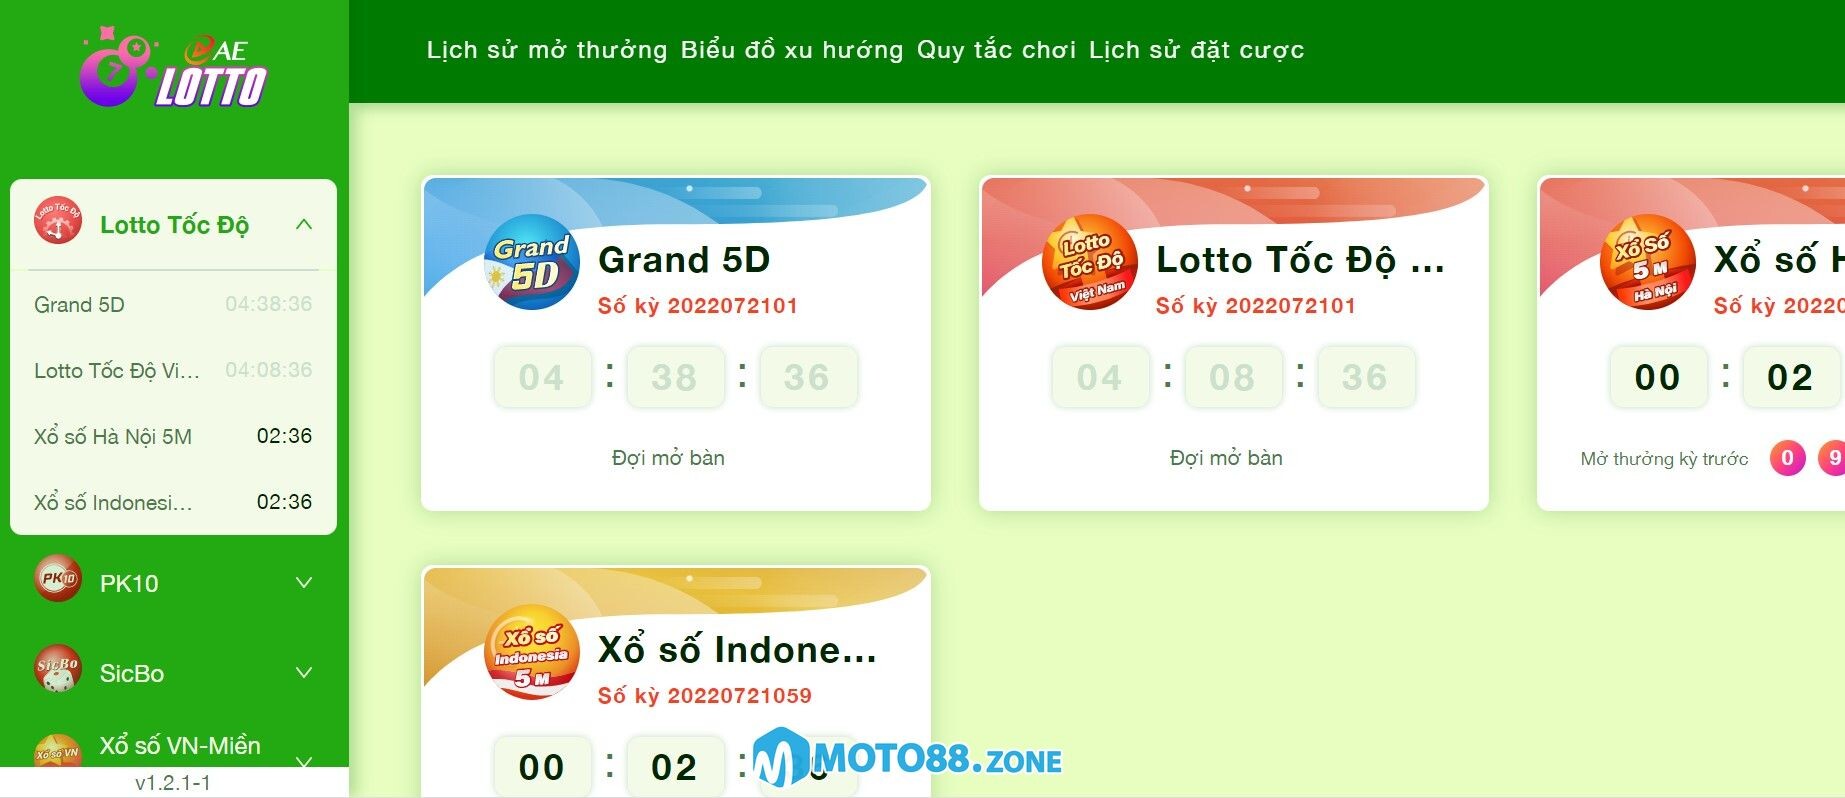 Truy cập vào sảnh game AE Lotto Moto88